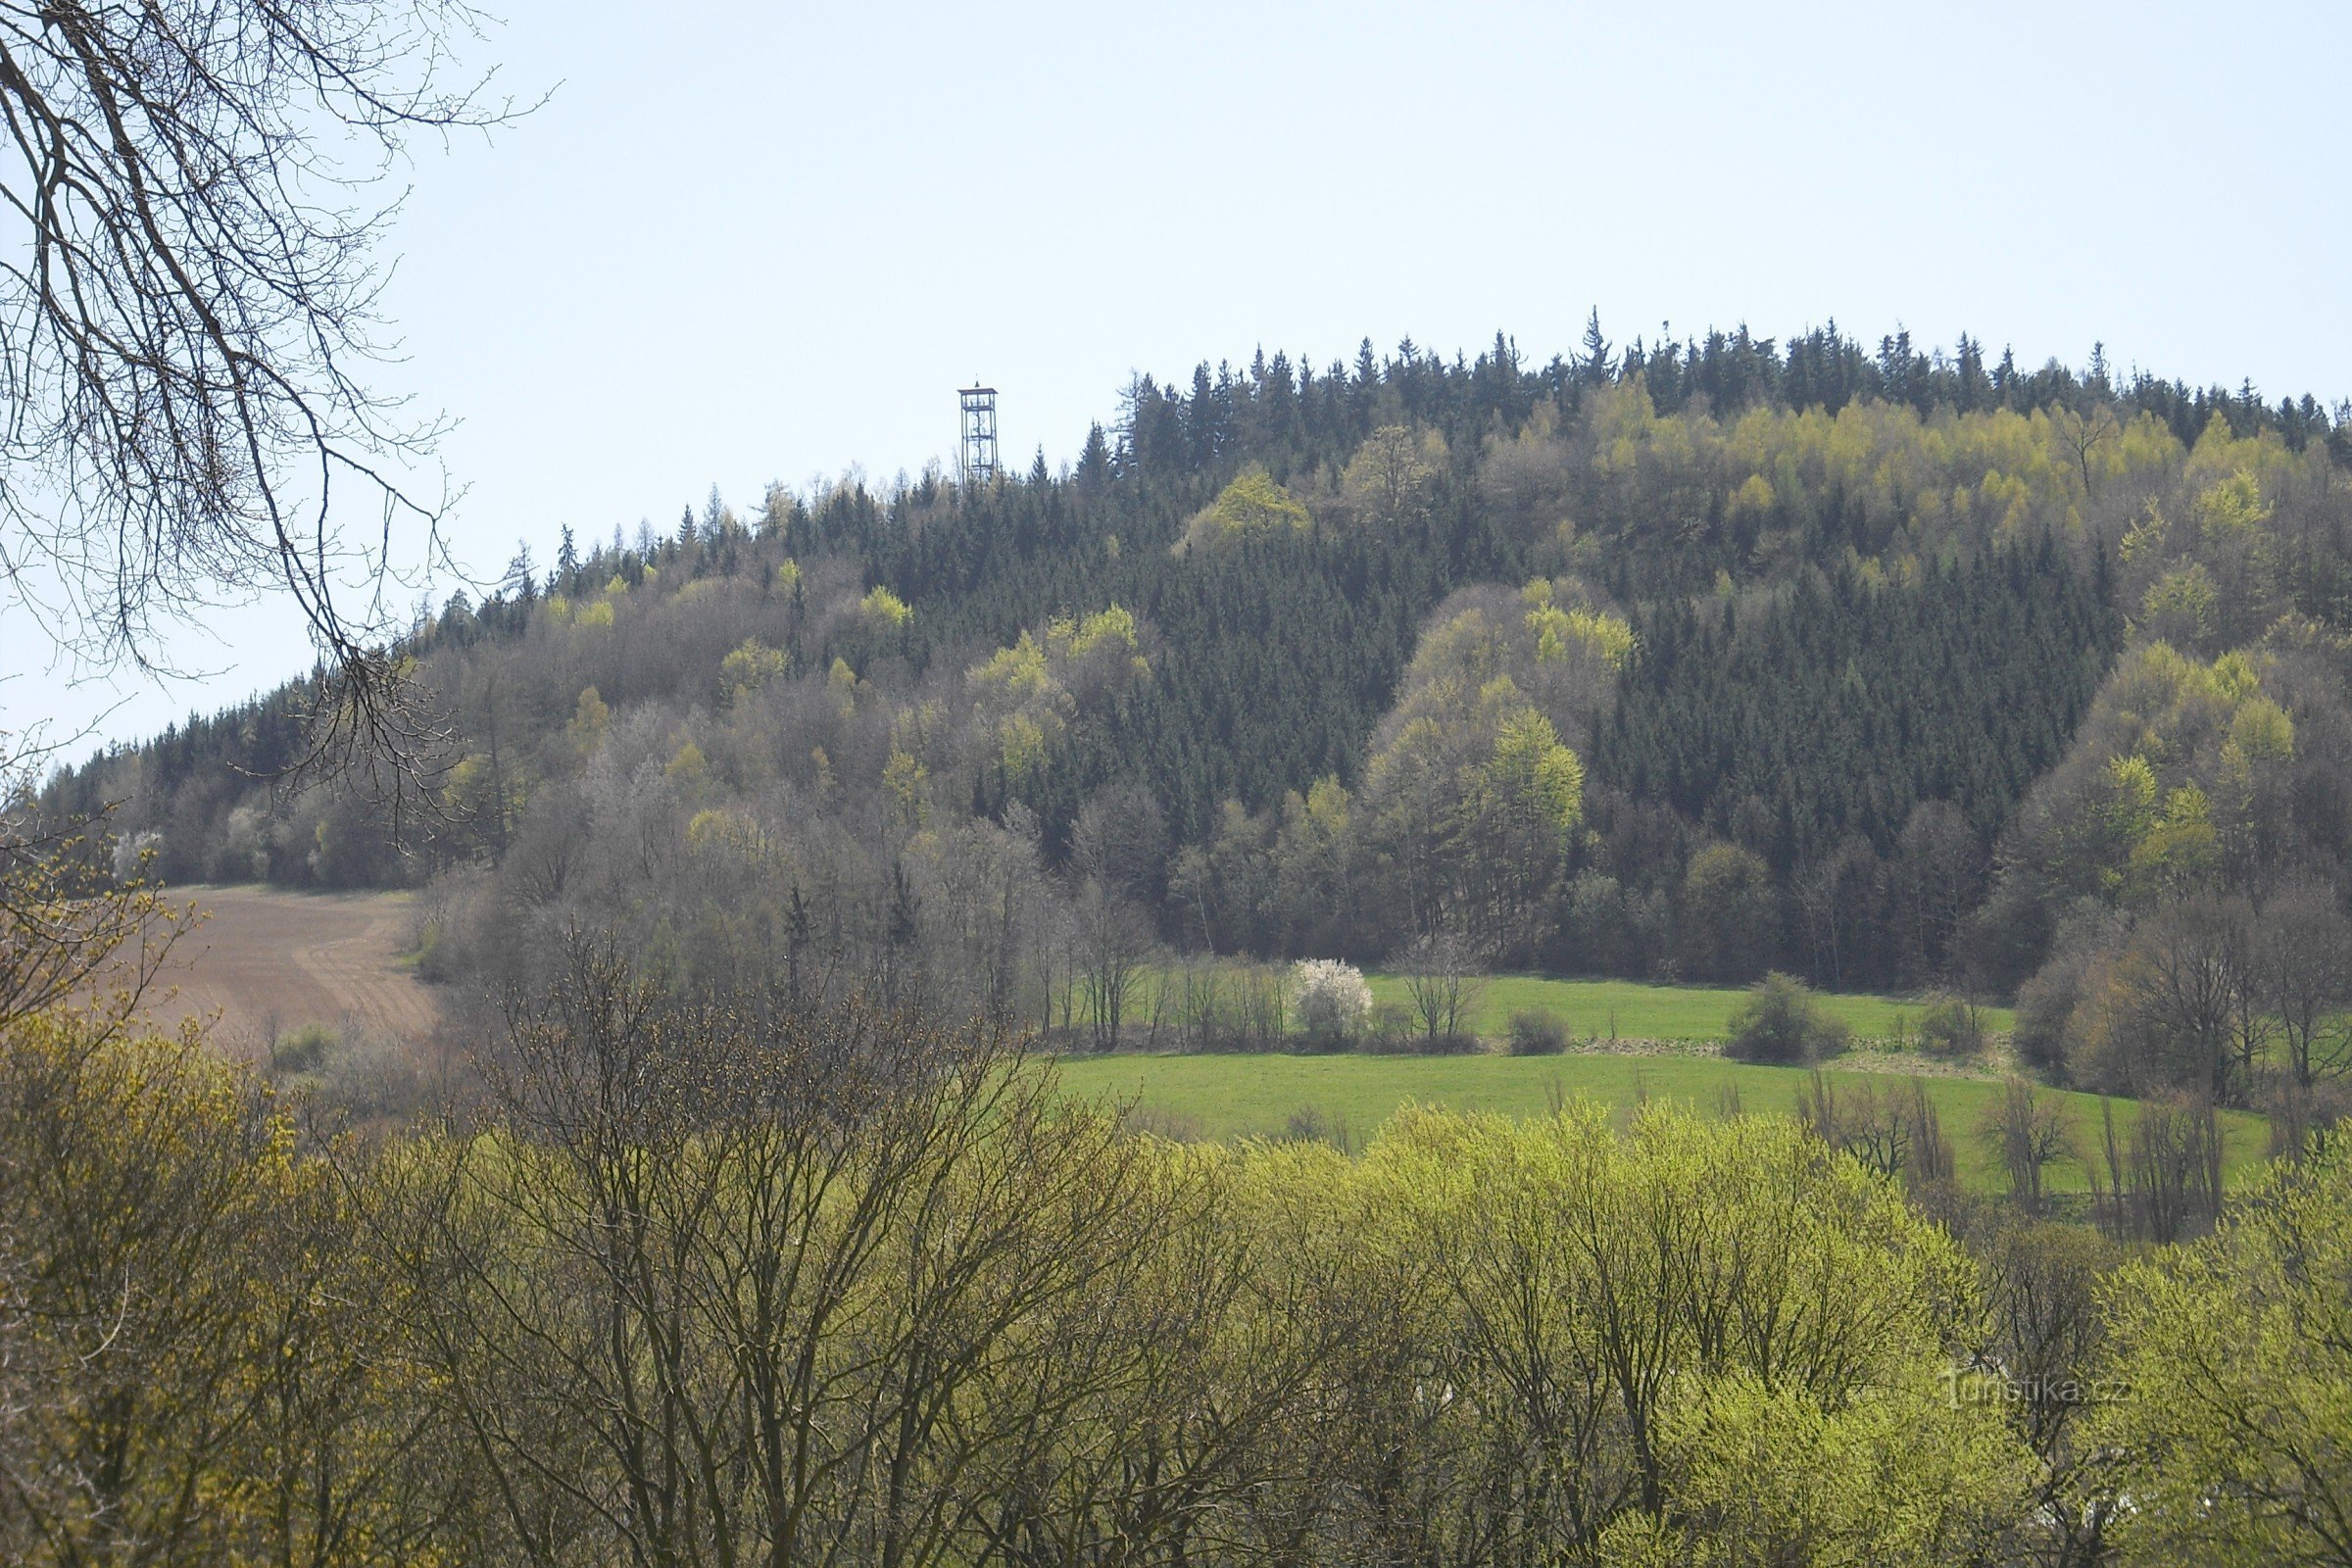 Pastýřka lookout tower near Moravská Třebová